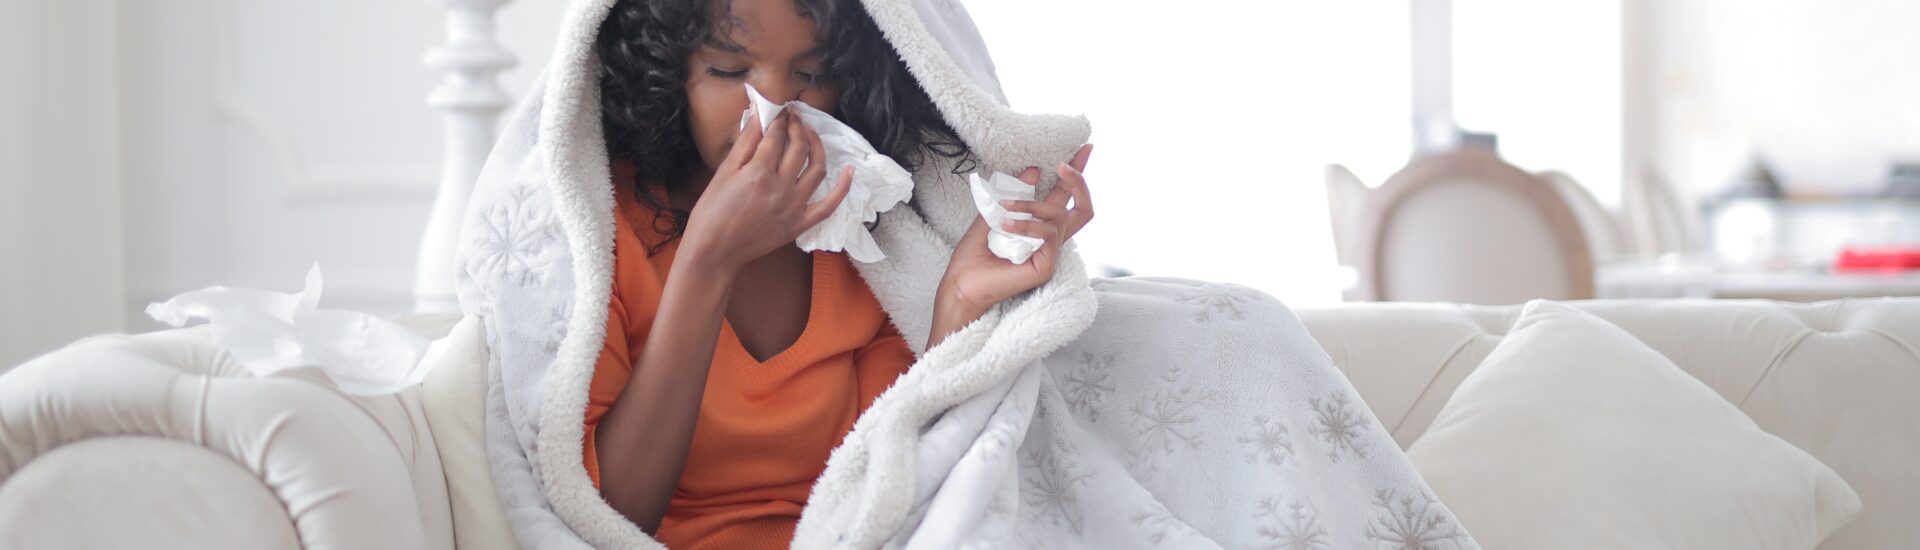 cuidados com a gripe